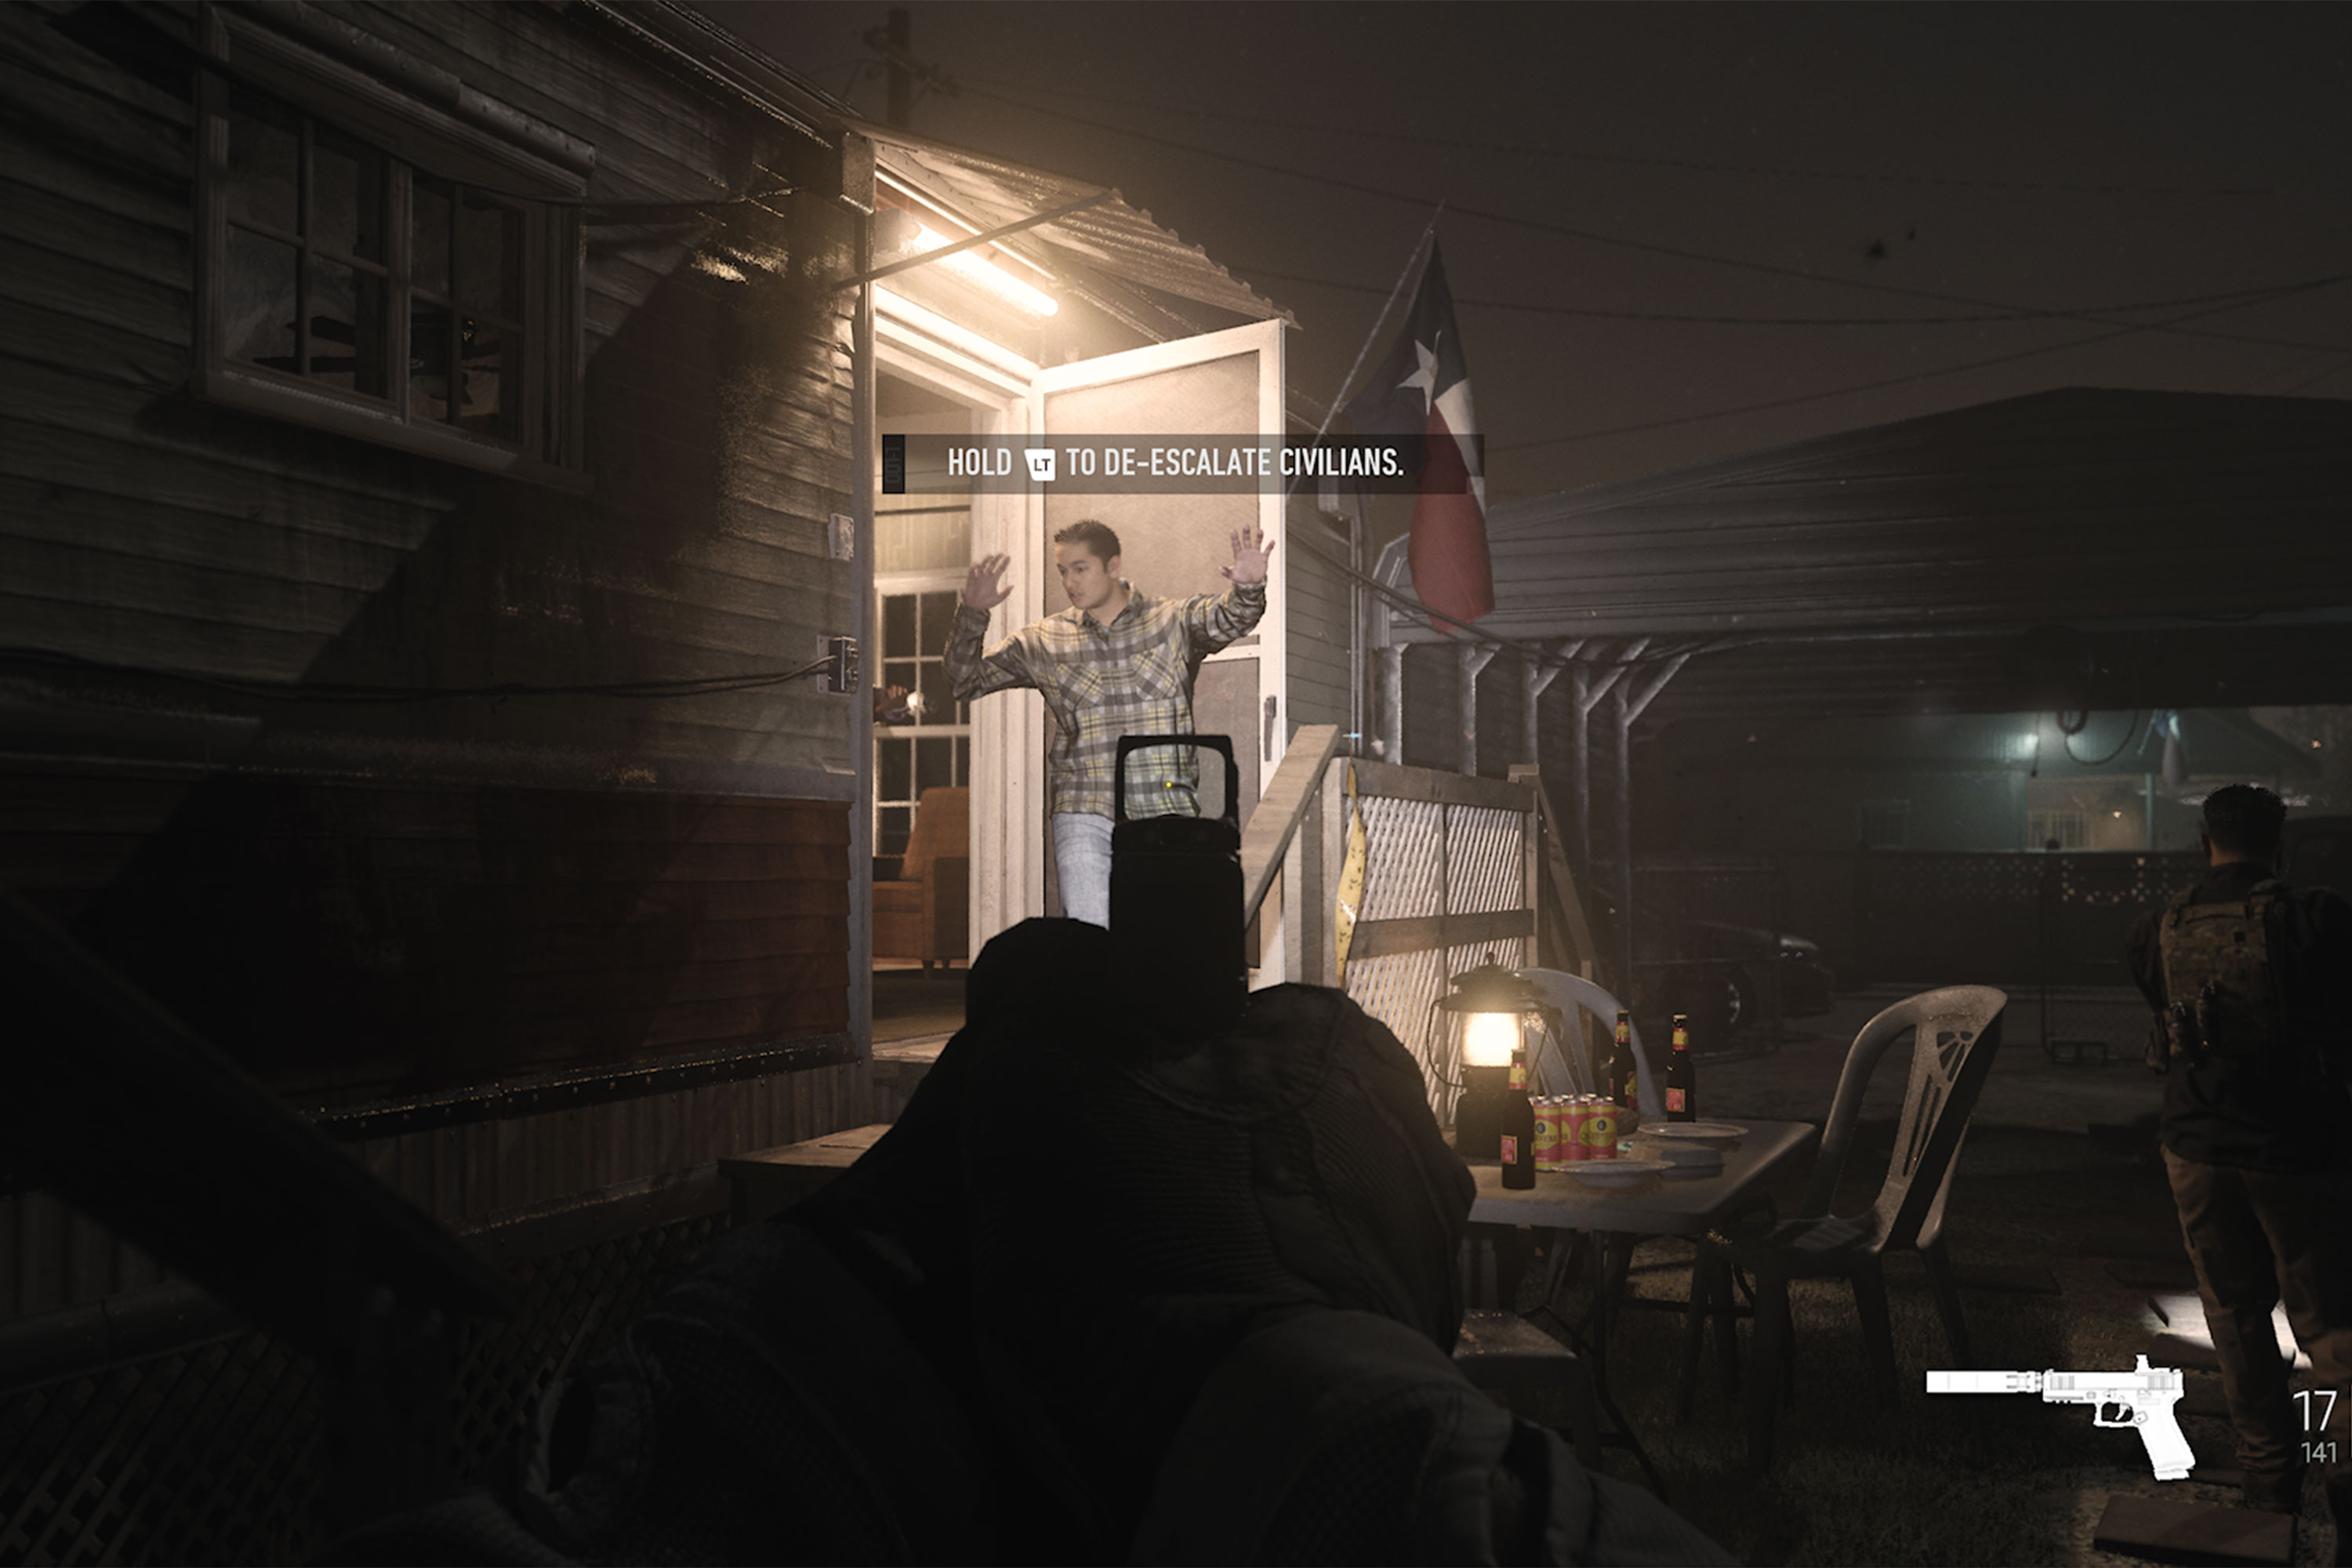 मॉडर्न वारफेयर 2 की एक छवि जहां खिलाड़ी स्क्रीन पर लिखे टेक्स्ट "होल्ड एलटी टू डी-एस्केलेट सिविलियंस" के साथ एक नागरिक पर एक हैंडगन की ओर इशारा कर रहा है।